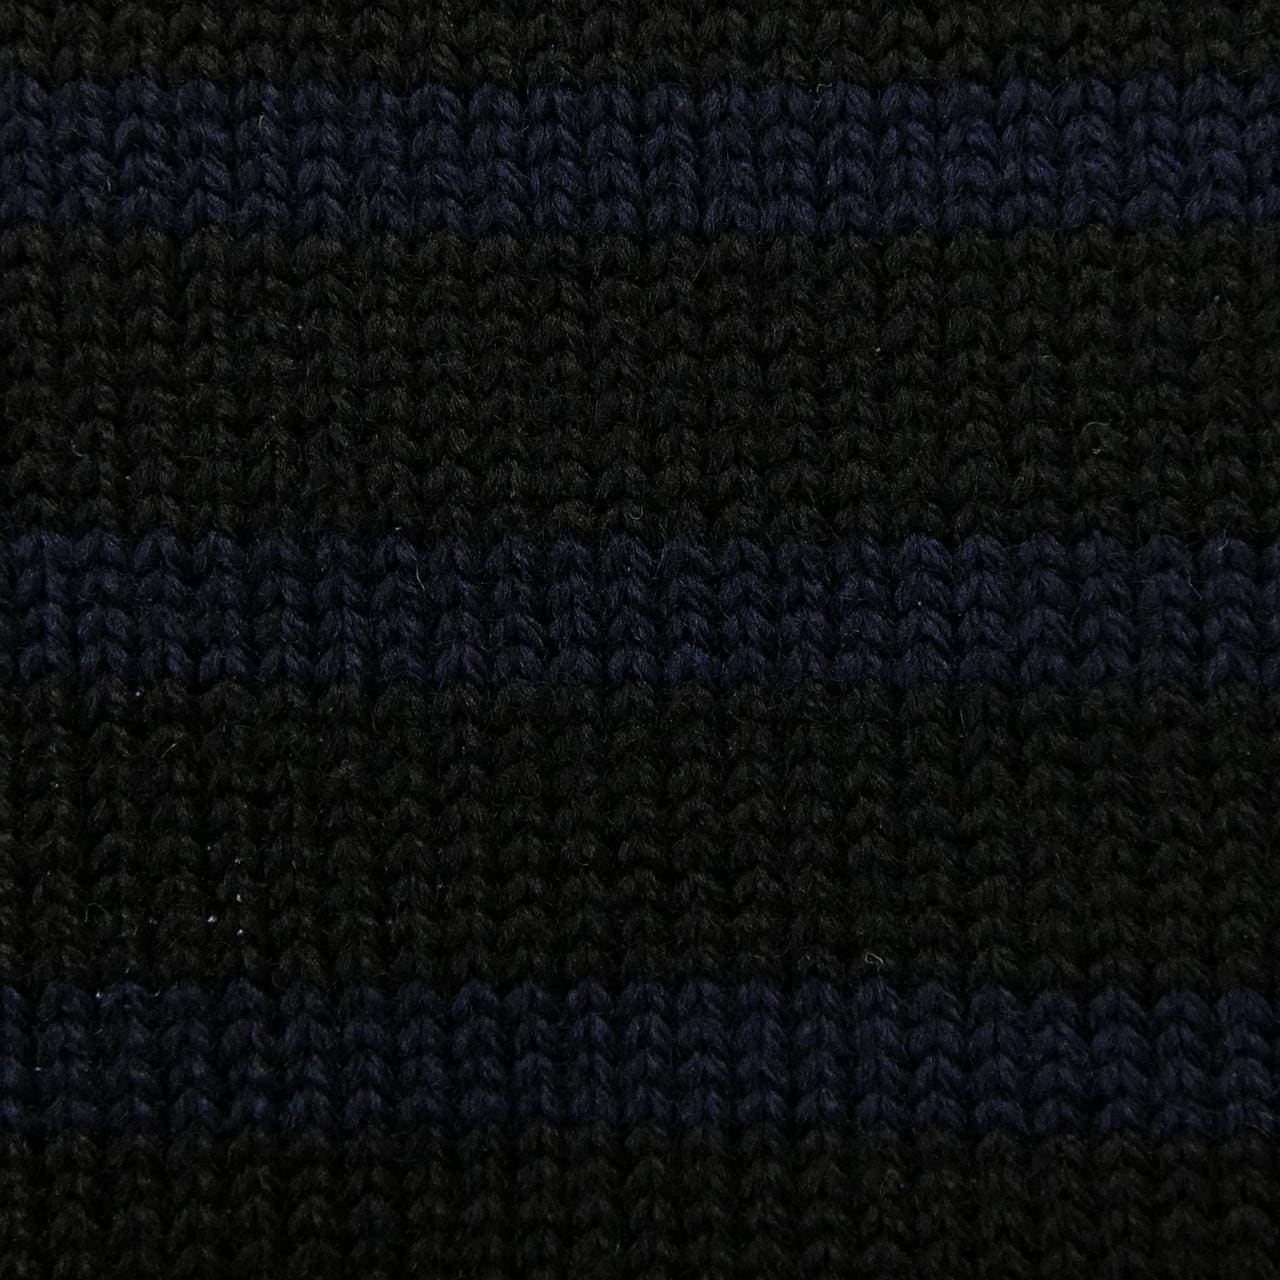 SAINT LAURENT SAINT LAURENT knitwear